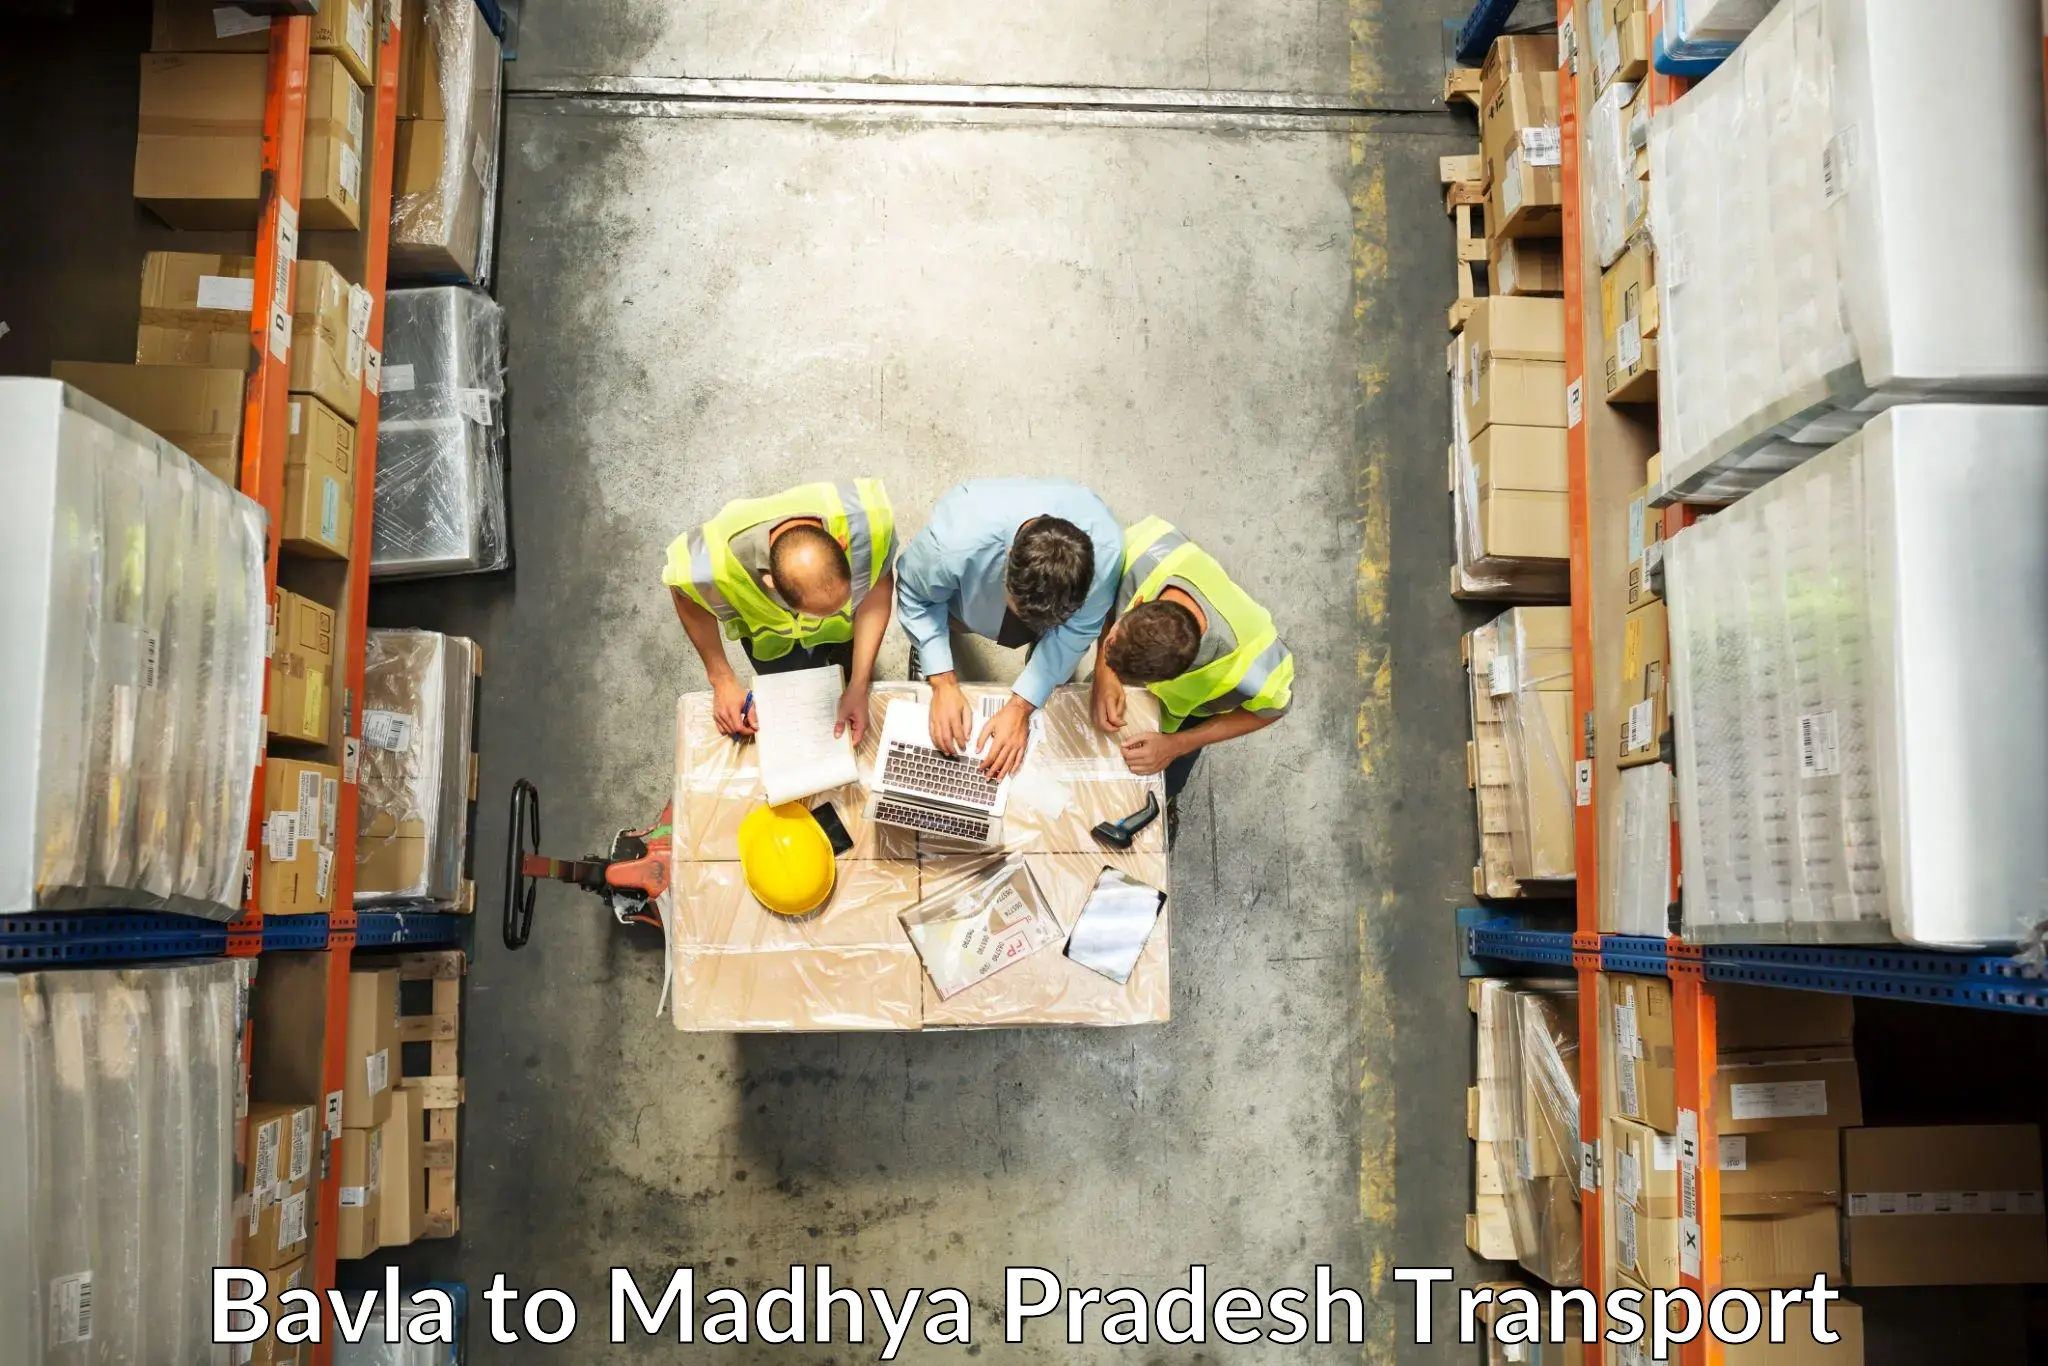 Part load transport service in India Bavla to Ratlam